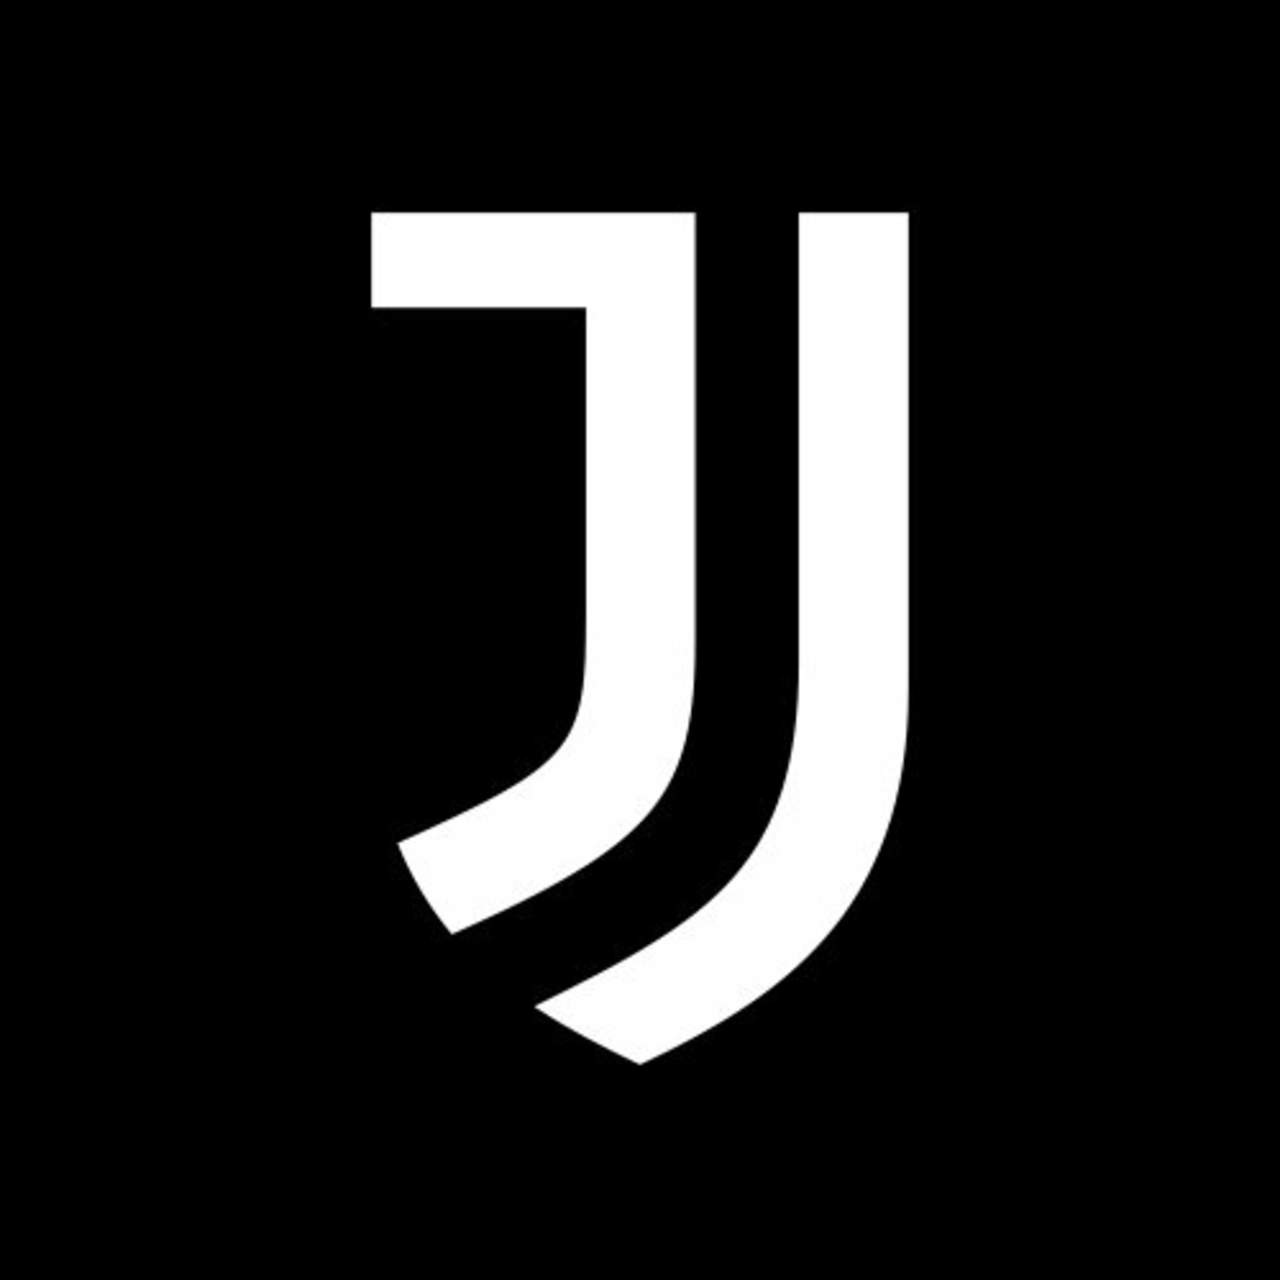 El logo fue presentado en Milán el lunes por la noche.
